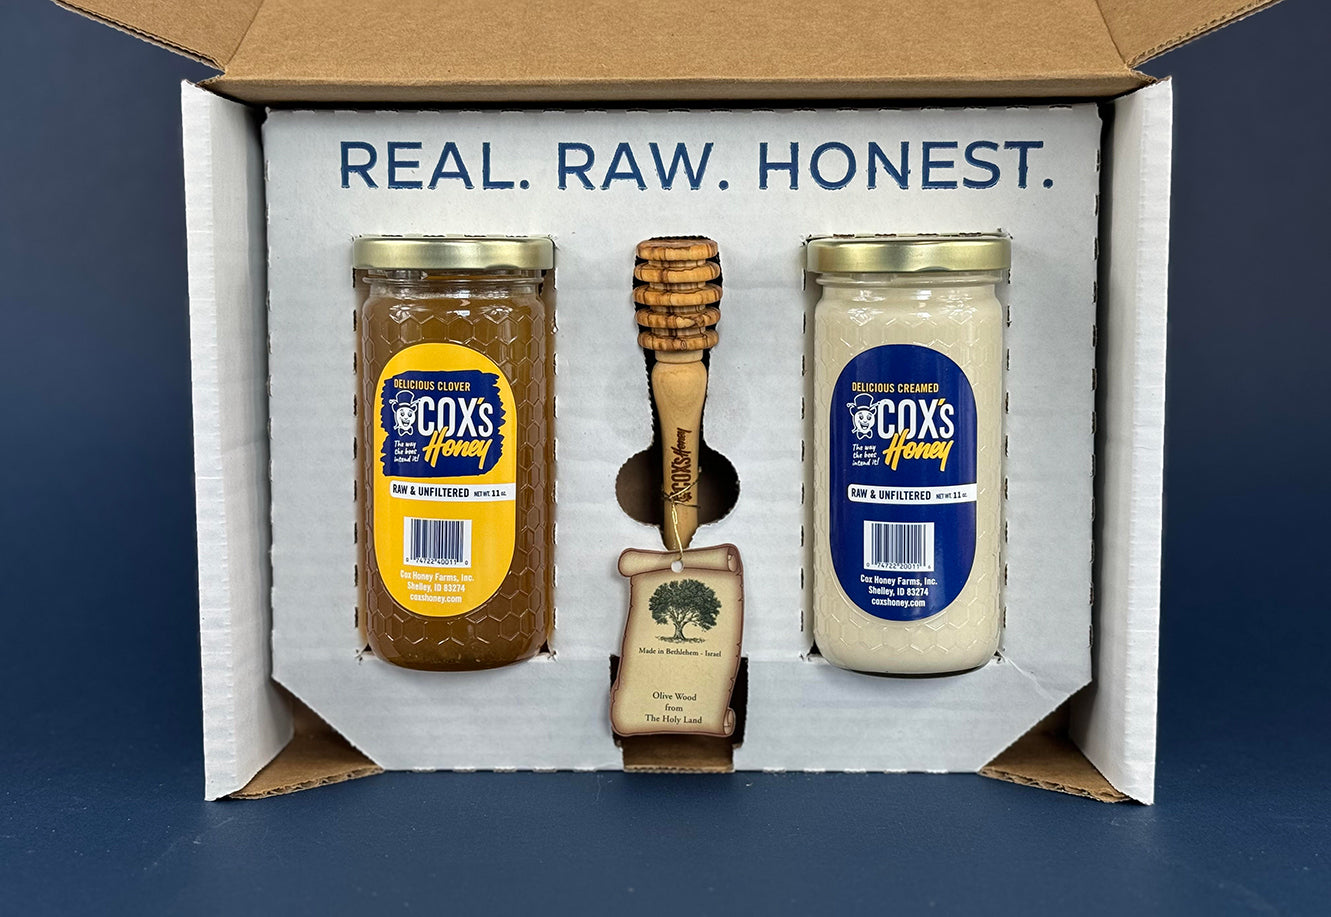 Cox's Honey gift set with 1 - 11 oz clover honey glass jar and 1 - 11 oz creamed honey glass jar and 1 olive wood honey dipper inside the gift box